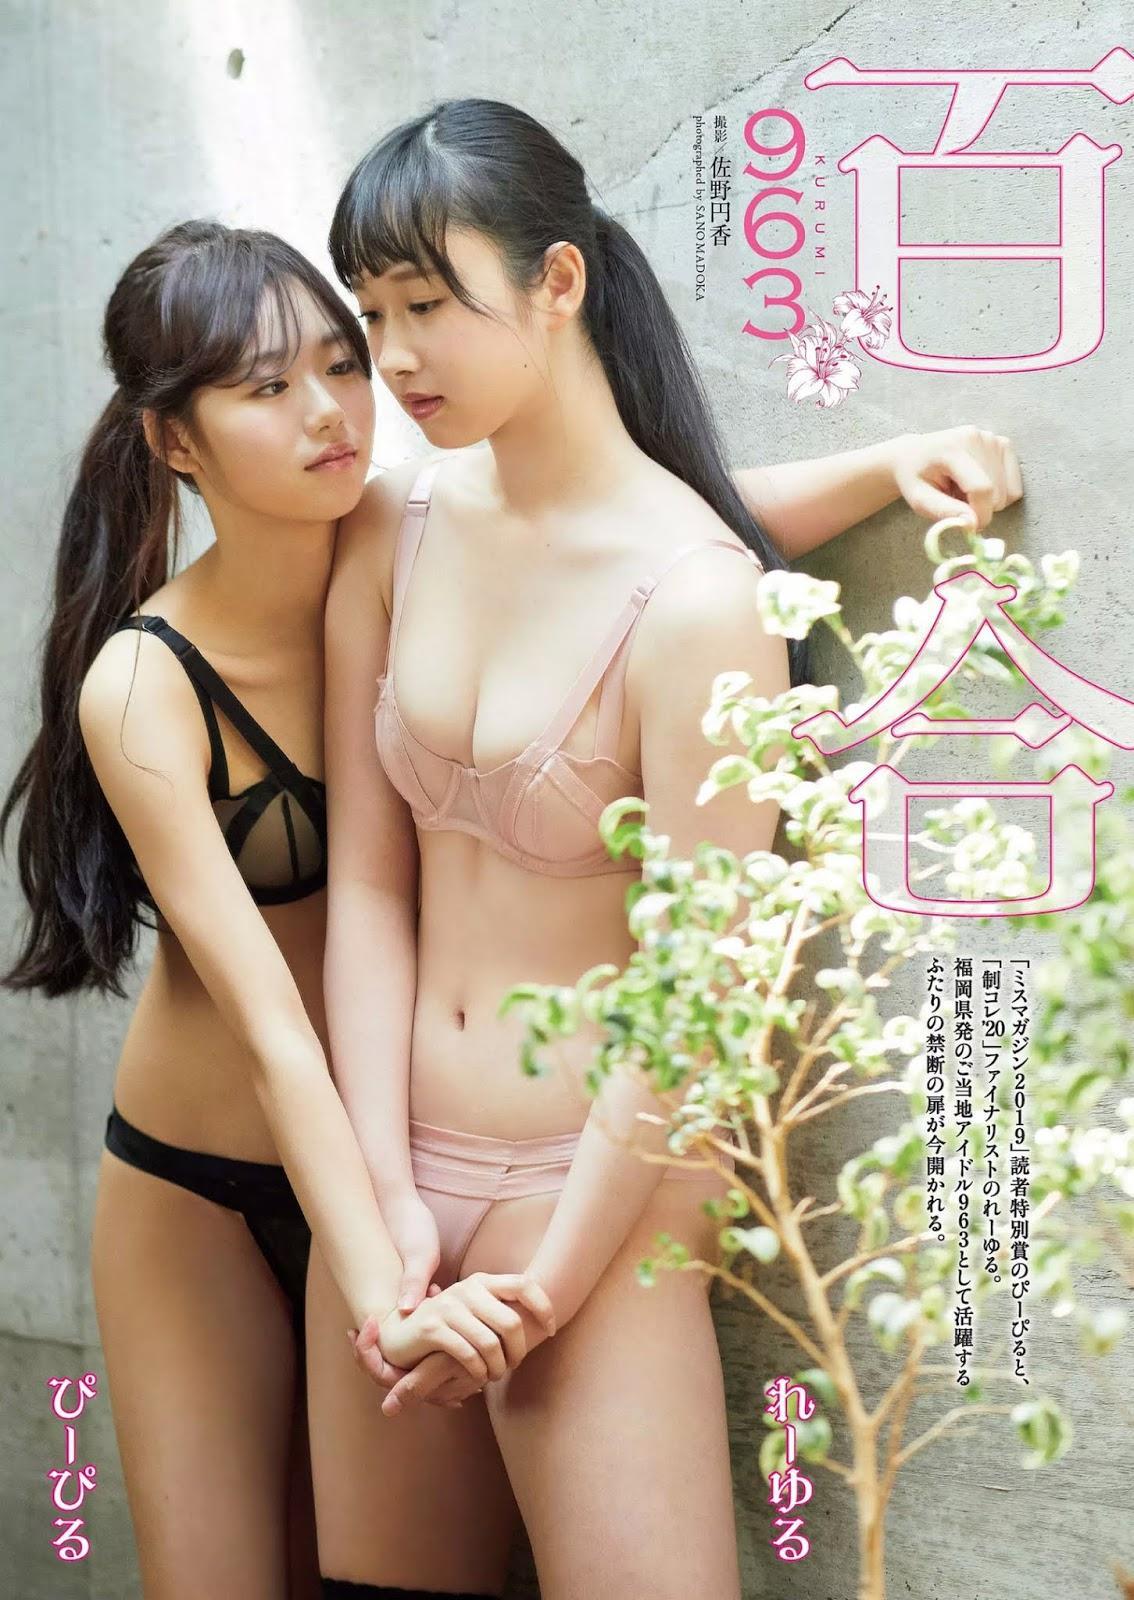 ぴーぴる & れーゆる, Weekly Playboy 2020 No.33-34 (週刊プレイボーイ 2020年33-34号)(1)